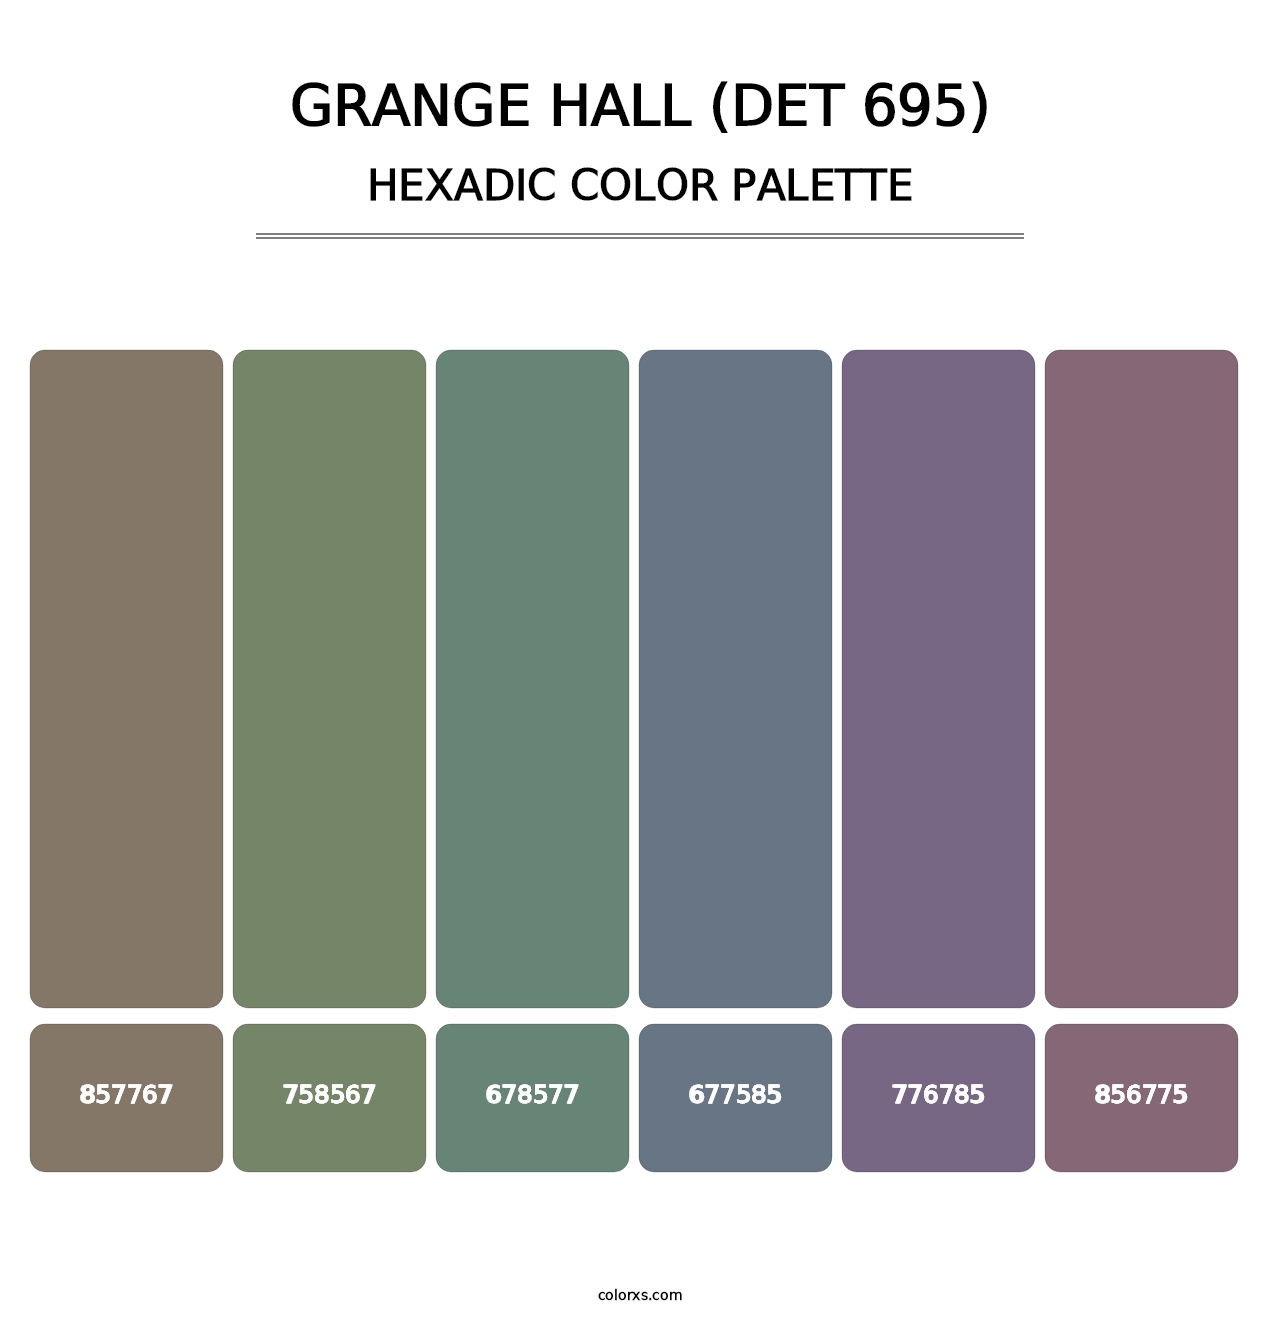 Grange Hall (DET 695) - Hexadic Color Palette